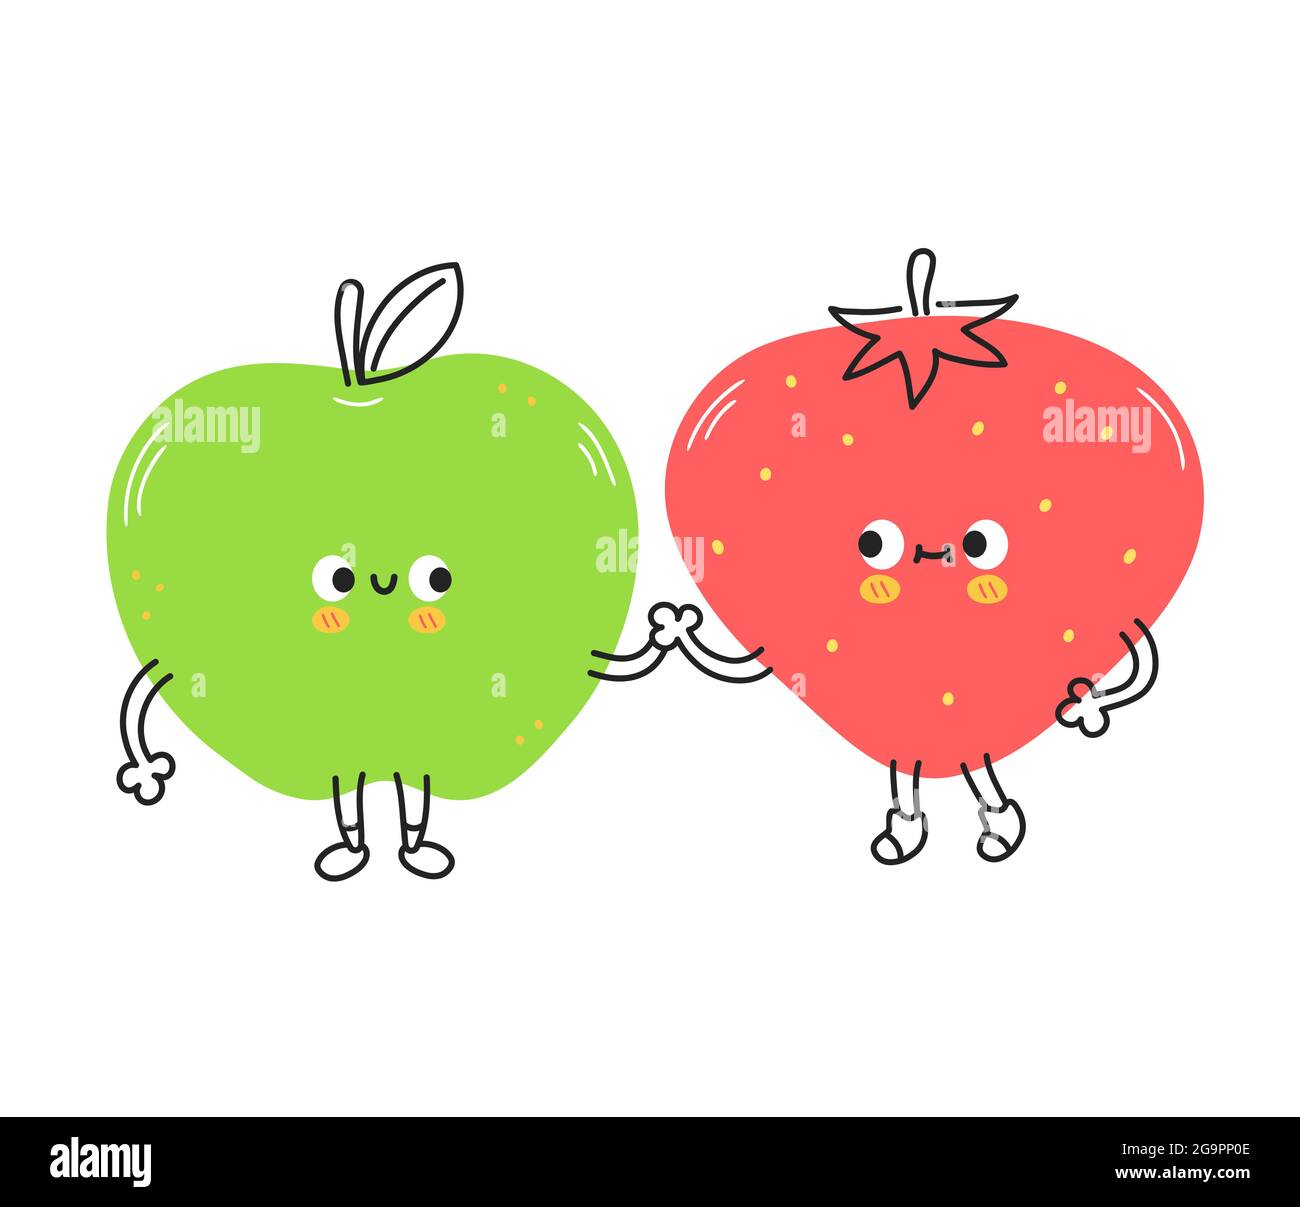 Fruits aux pommes et aux fraises amusants et mignons. Illustration vectorielle de personnage de dessin animé kawaii Doodle. Fraise, pomme fruit amis mascotte personnage de dessin animé concept.isolé sur fond blanc Illustration de Vecteur